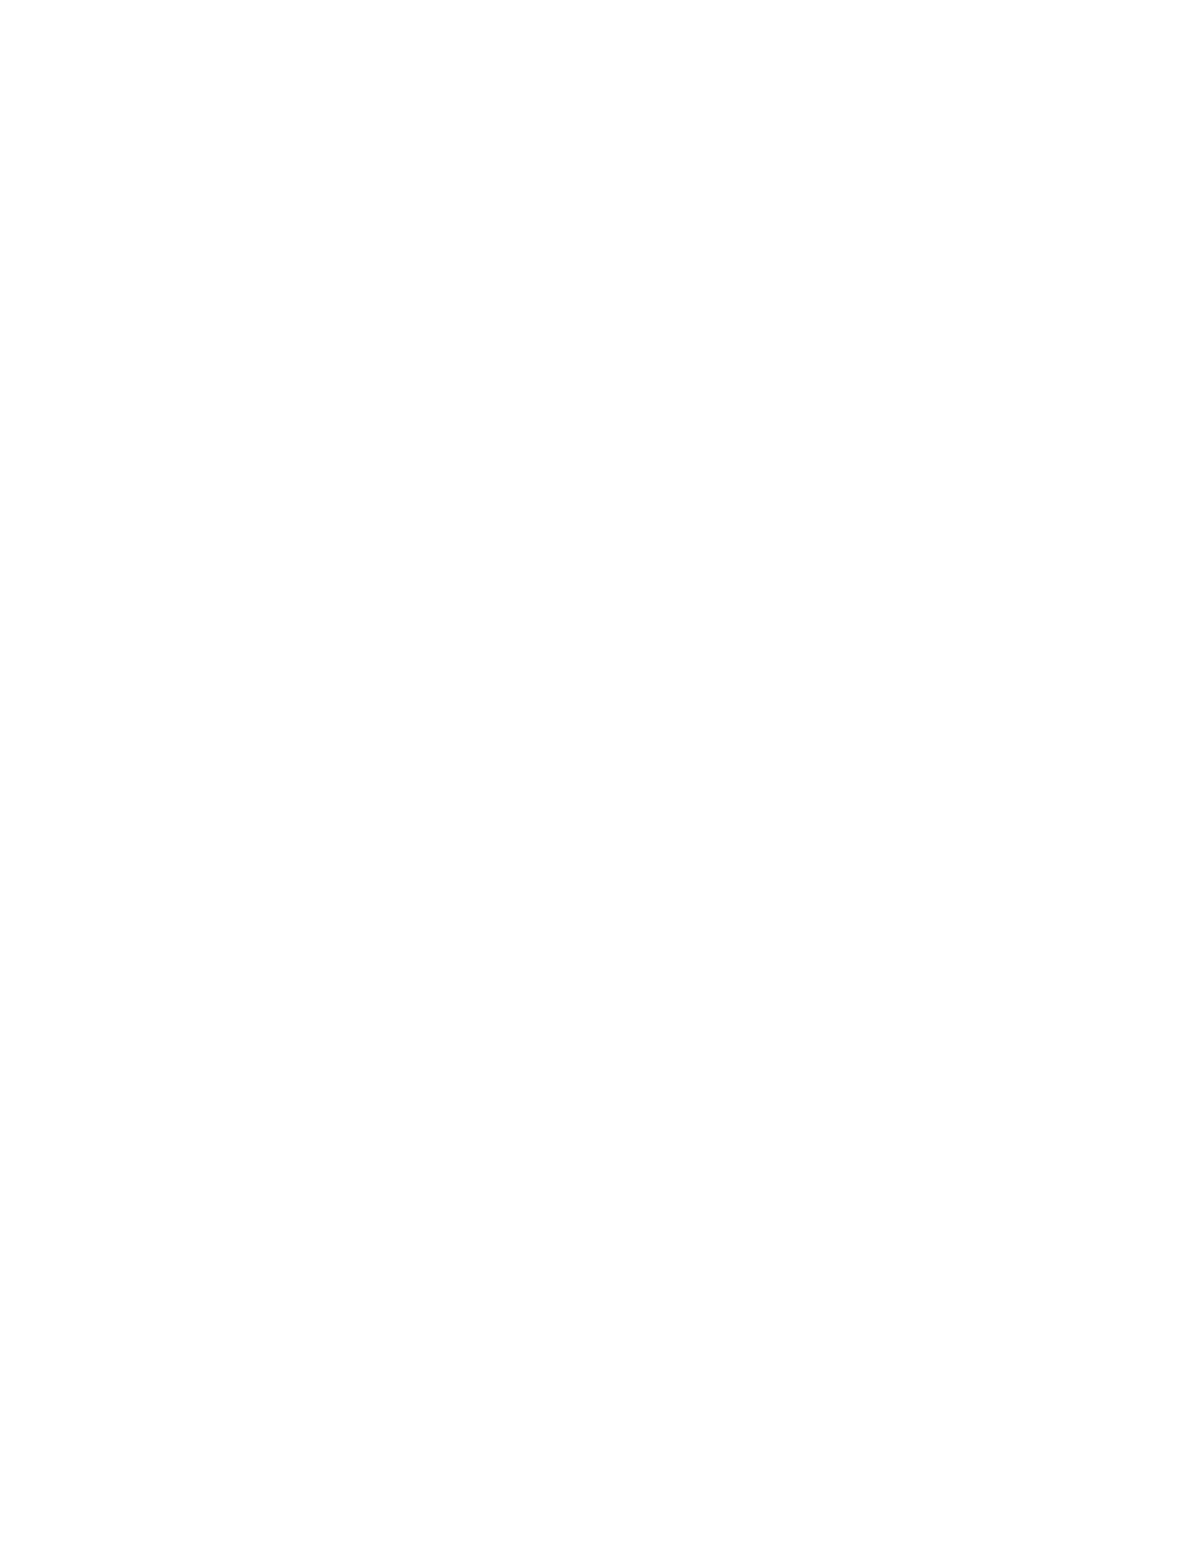 ETC 6 Meridian logo pour fonds sombres (PNG transparent)